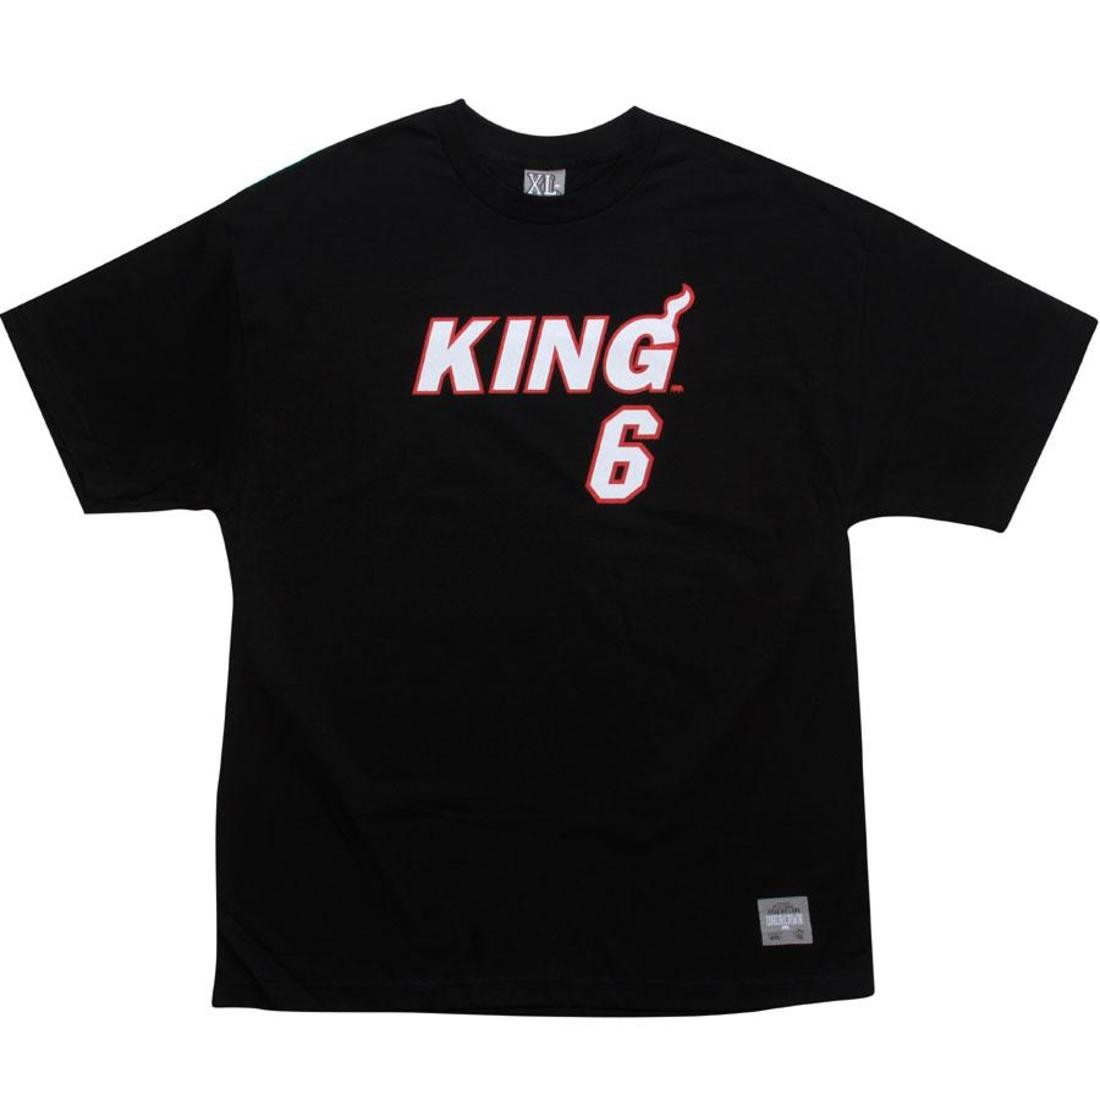 UNDRCRWN King 6 Tee - LeBron Miami (black)